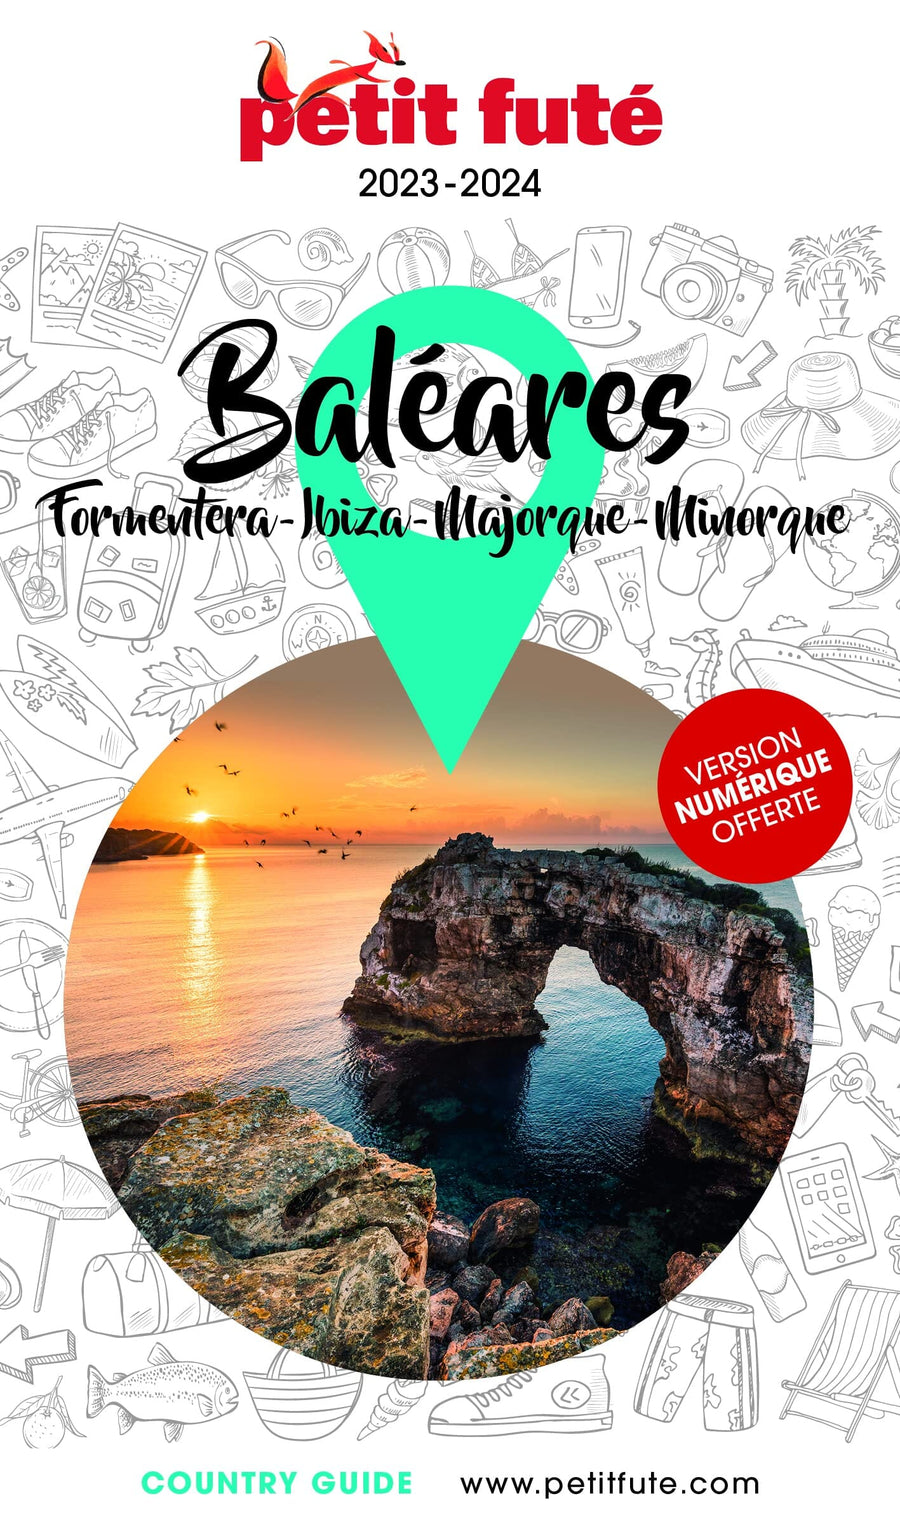 Guide de voyage - Baléares : Ibiza, Majorque, Minorque, Formentera 2023/24 | Petit Futé guide de voyage Petit Futé 